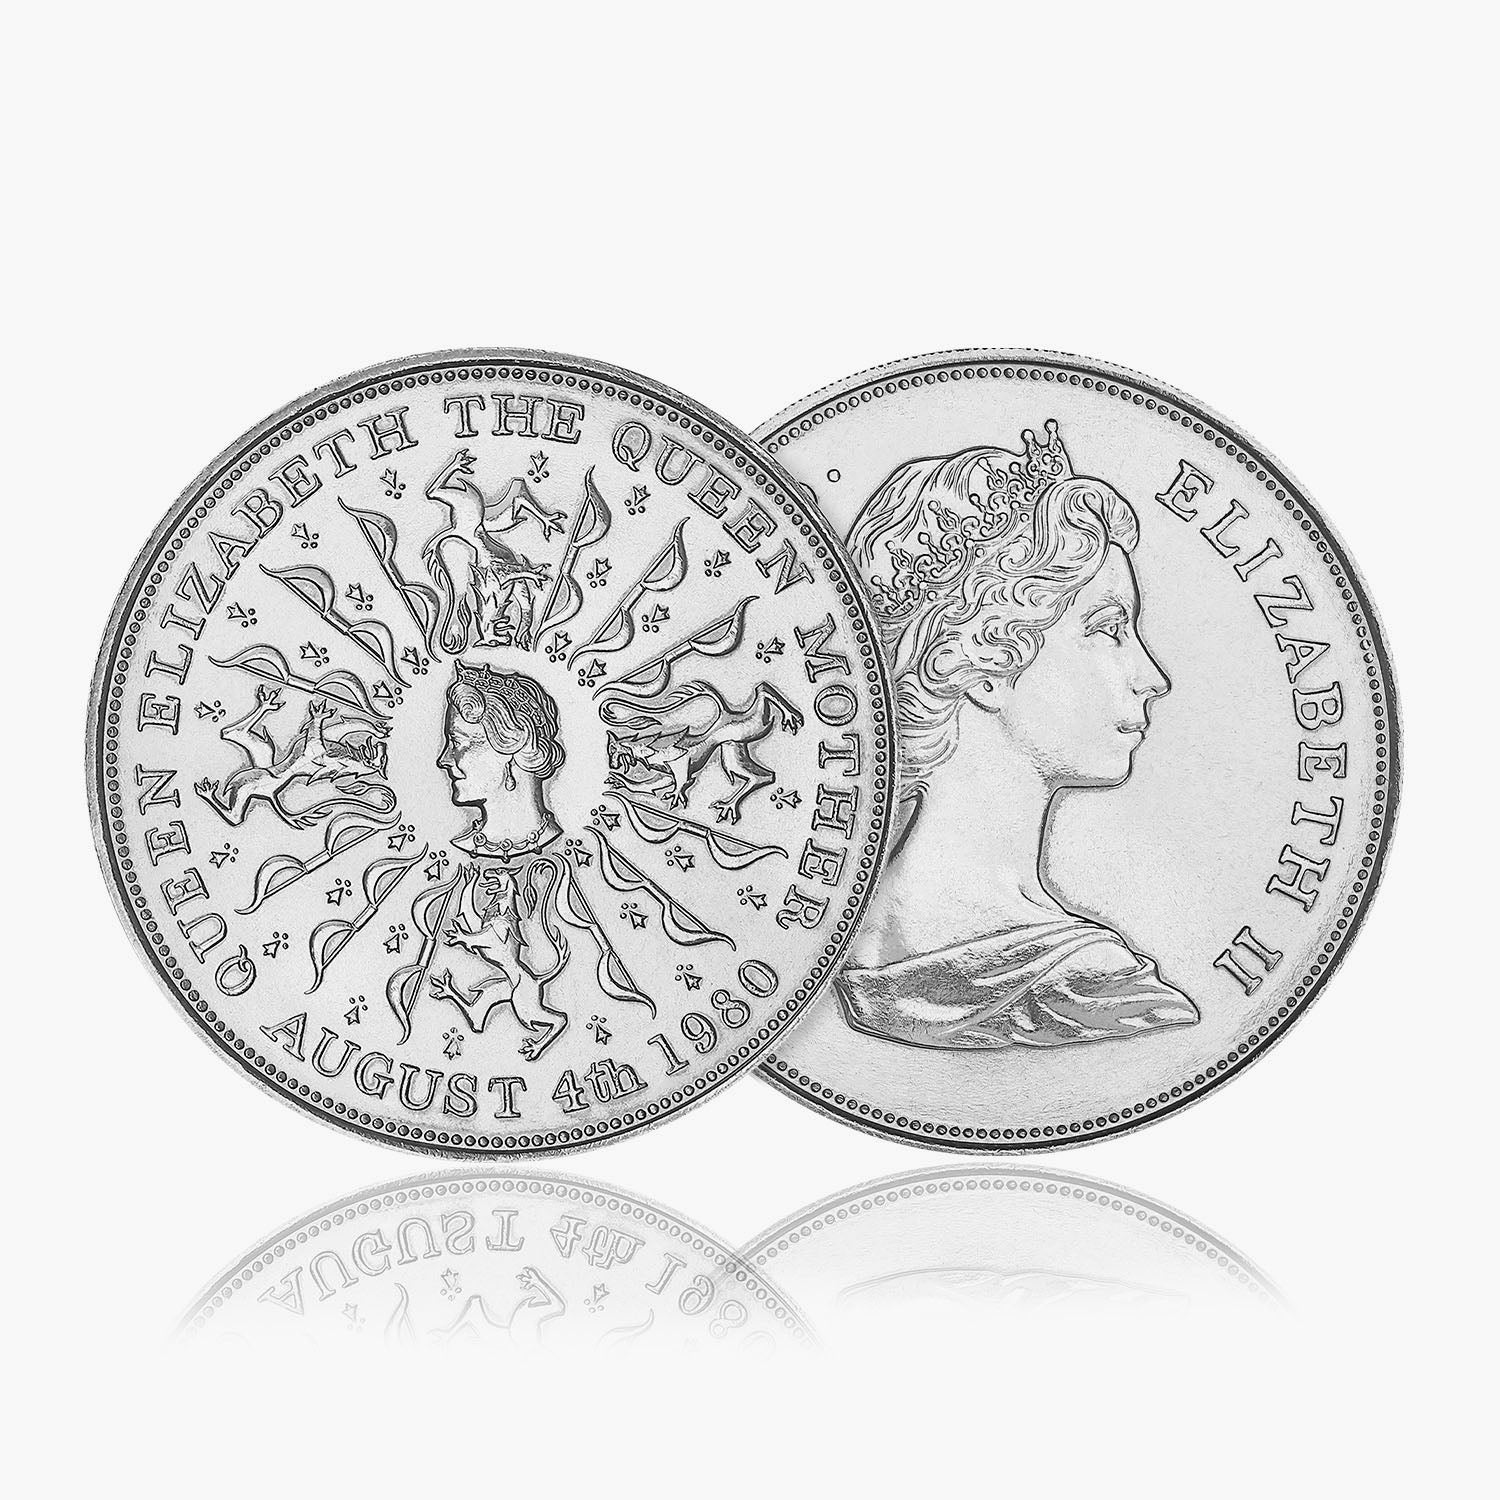 1980年 ジブラルタル クイーンマザー 80周年記念コイン 銀貨 - 旧貨幣 